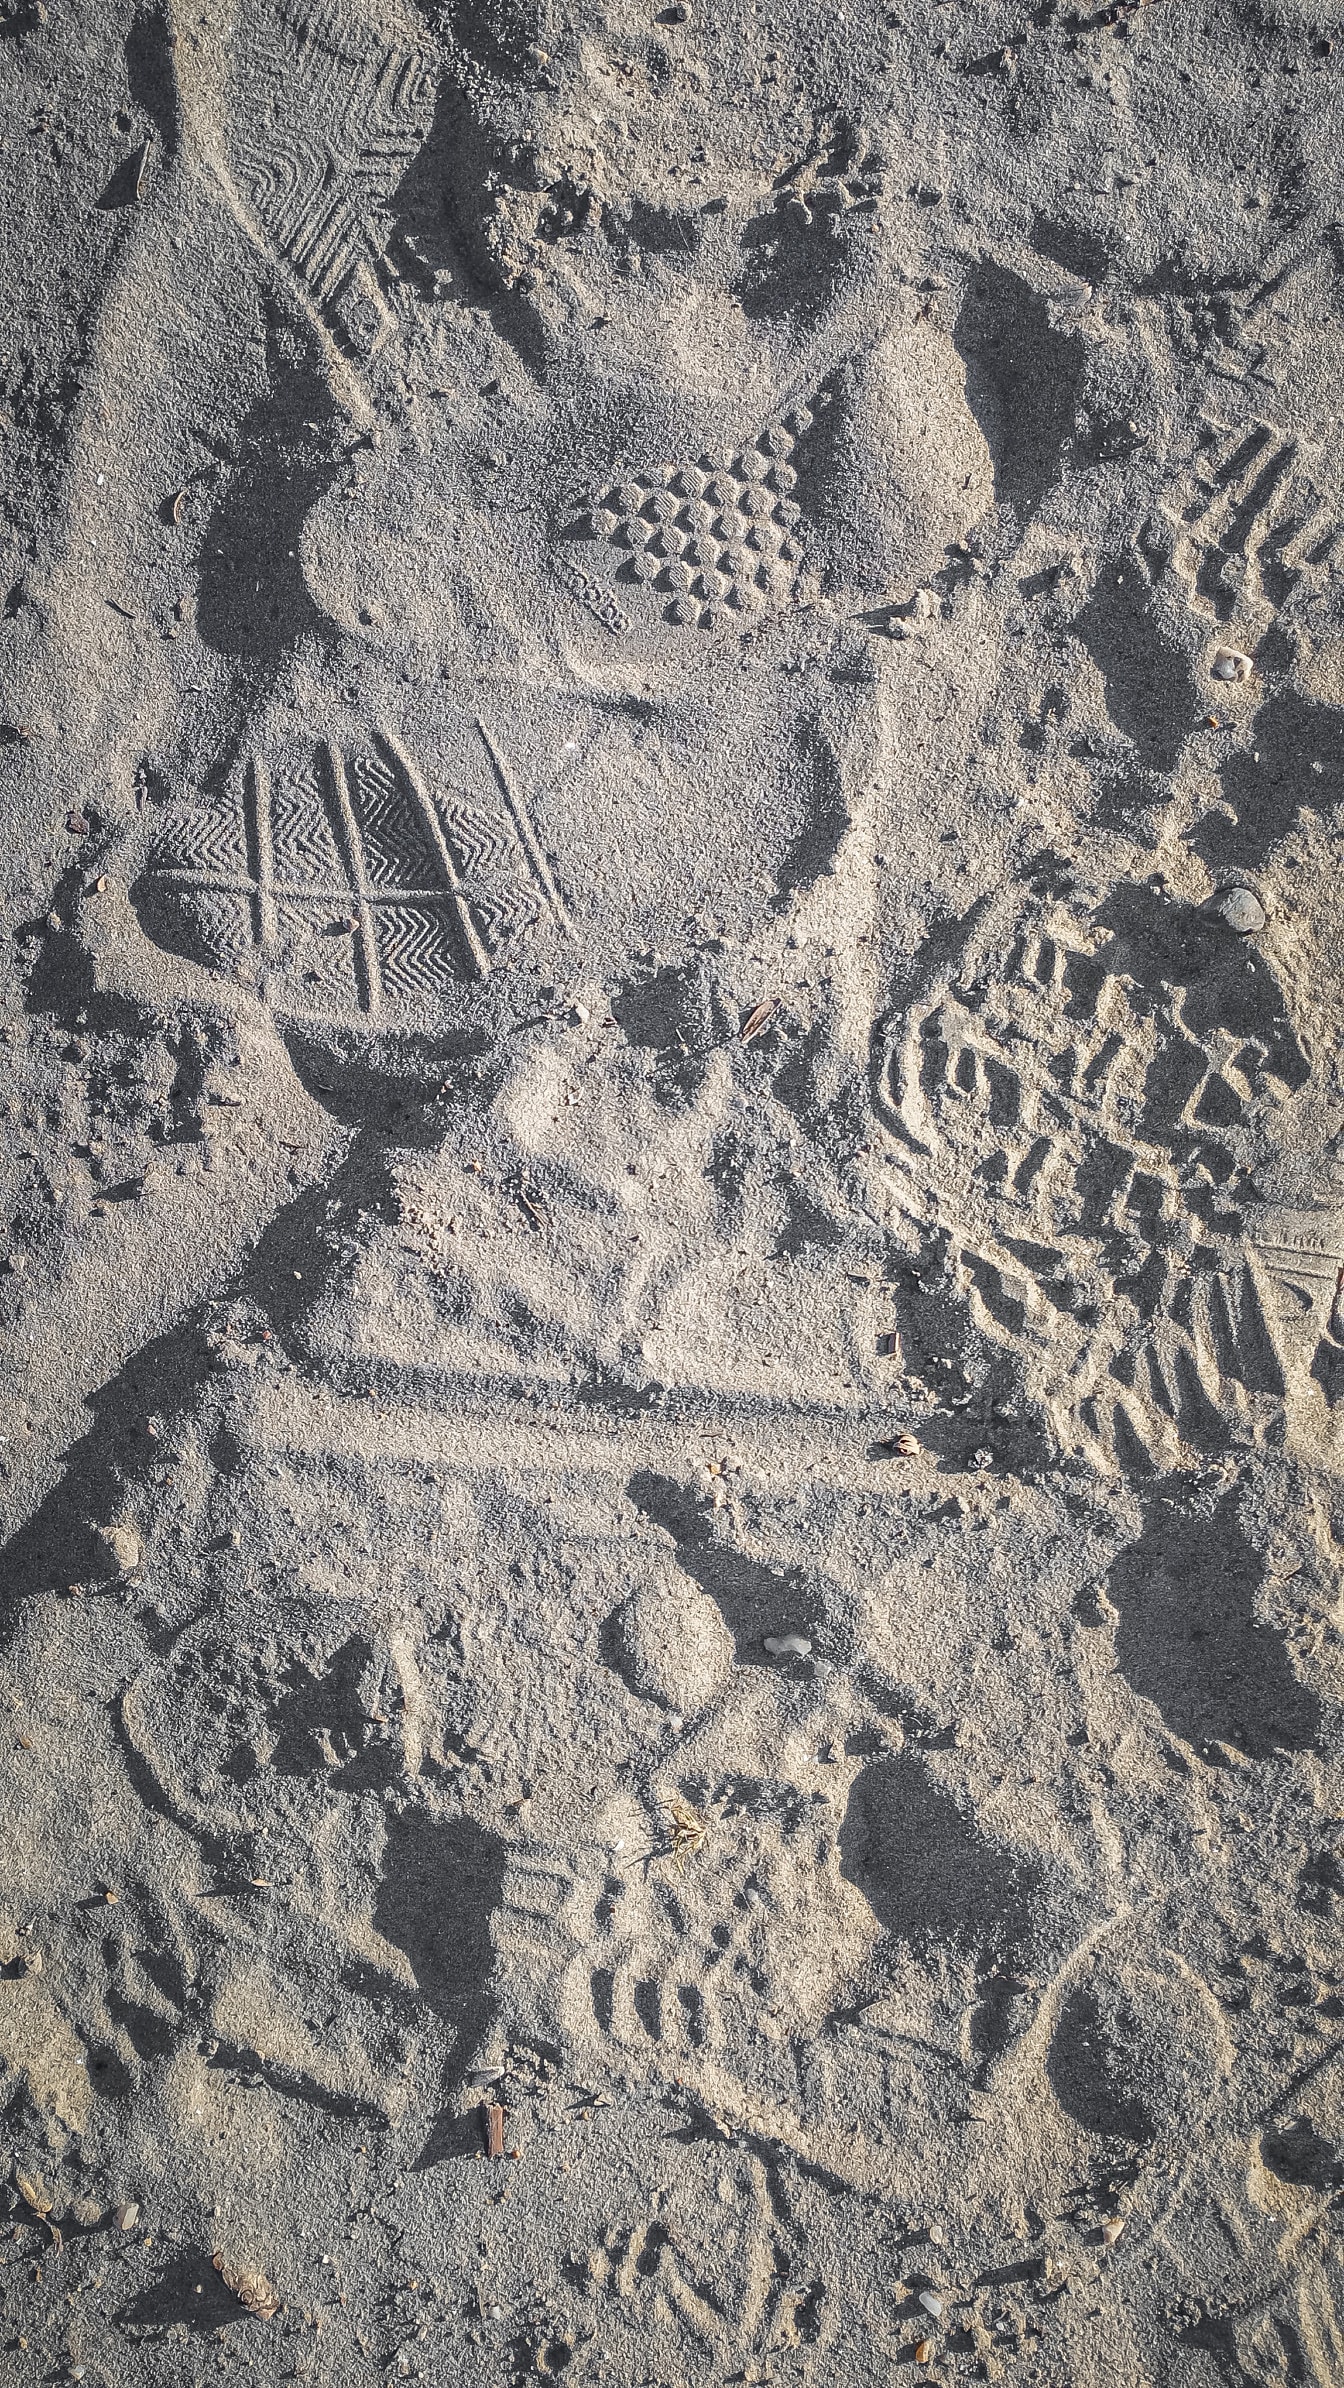 Consistenza ruvida di sabbia con impronte sulla superficie